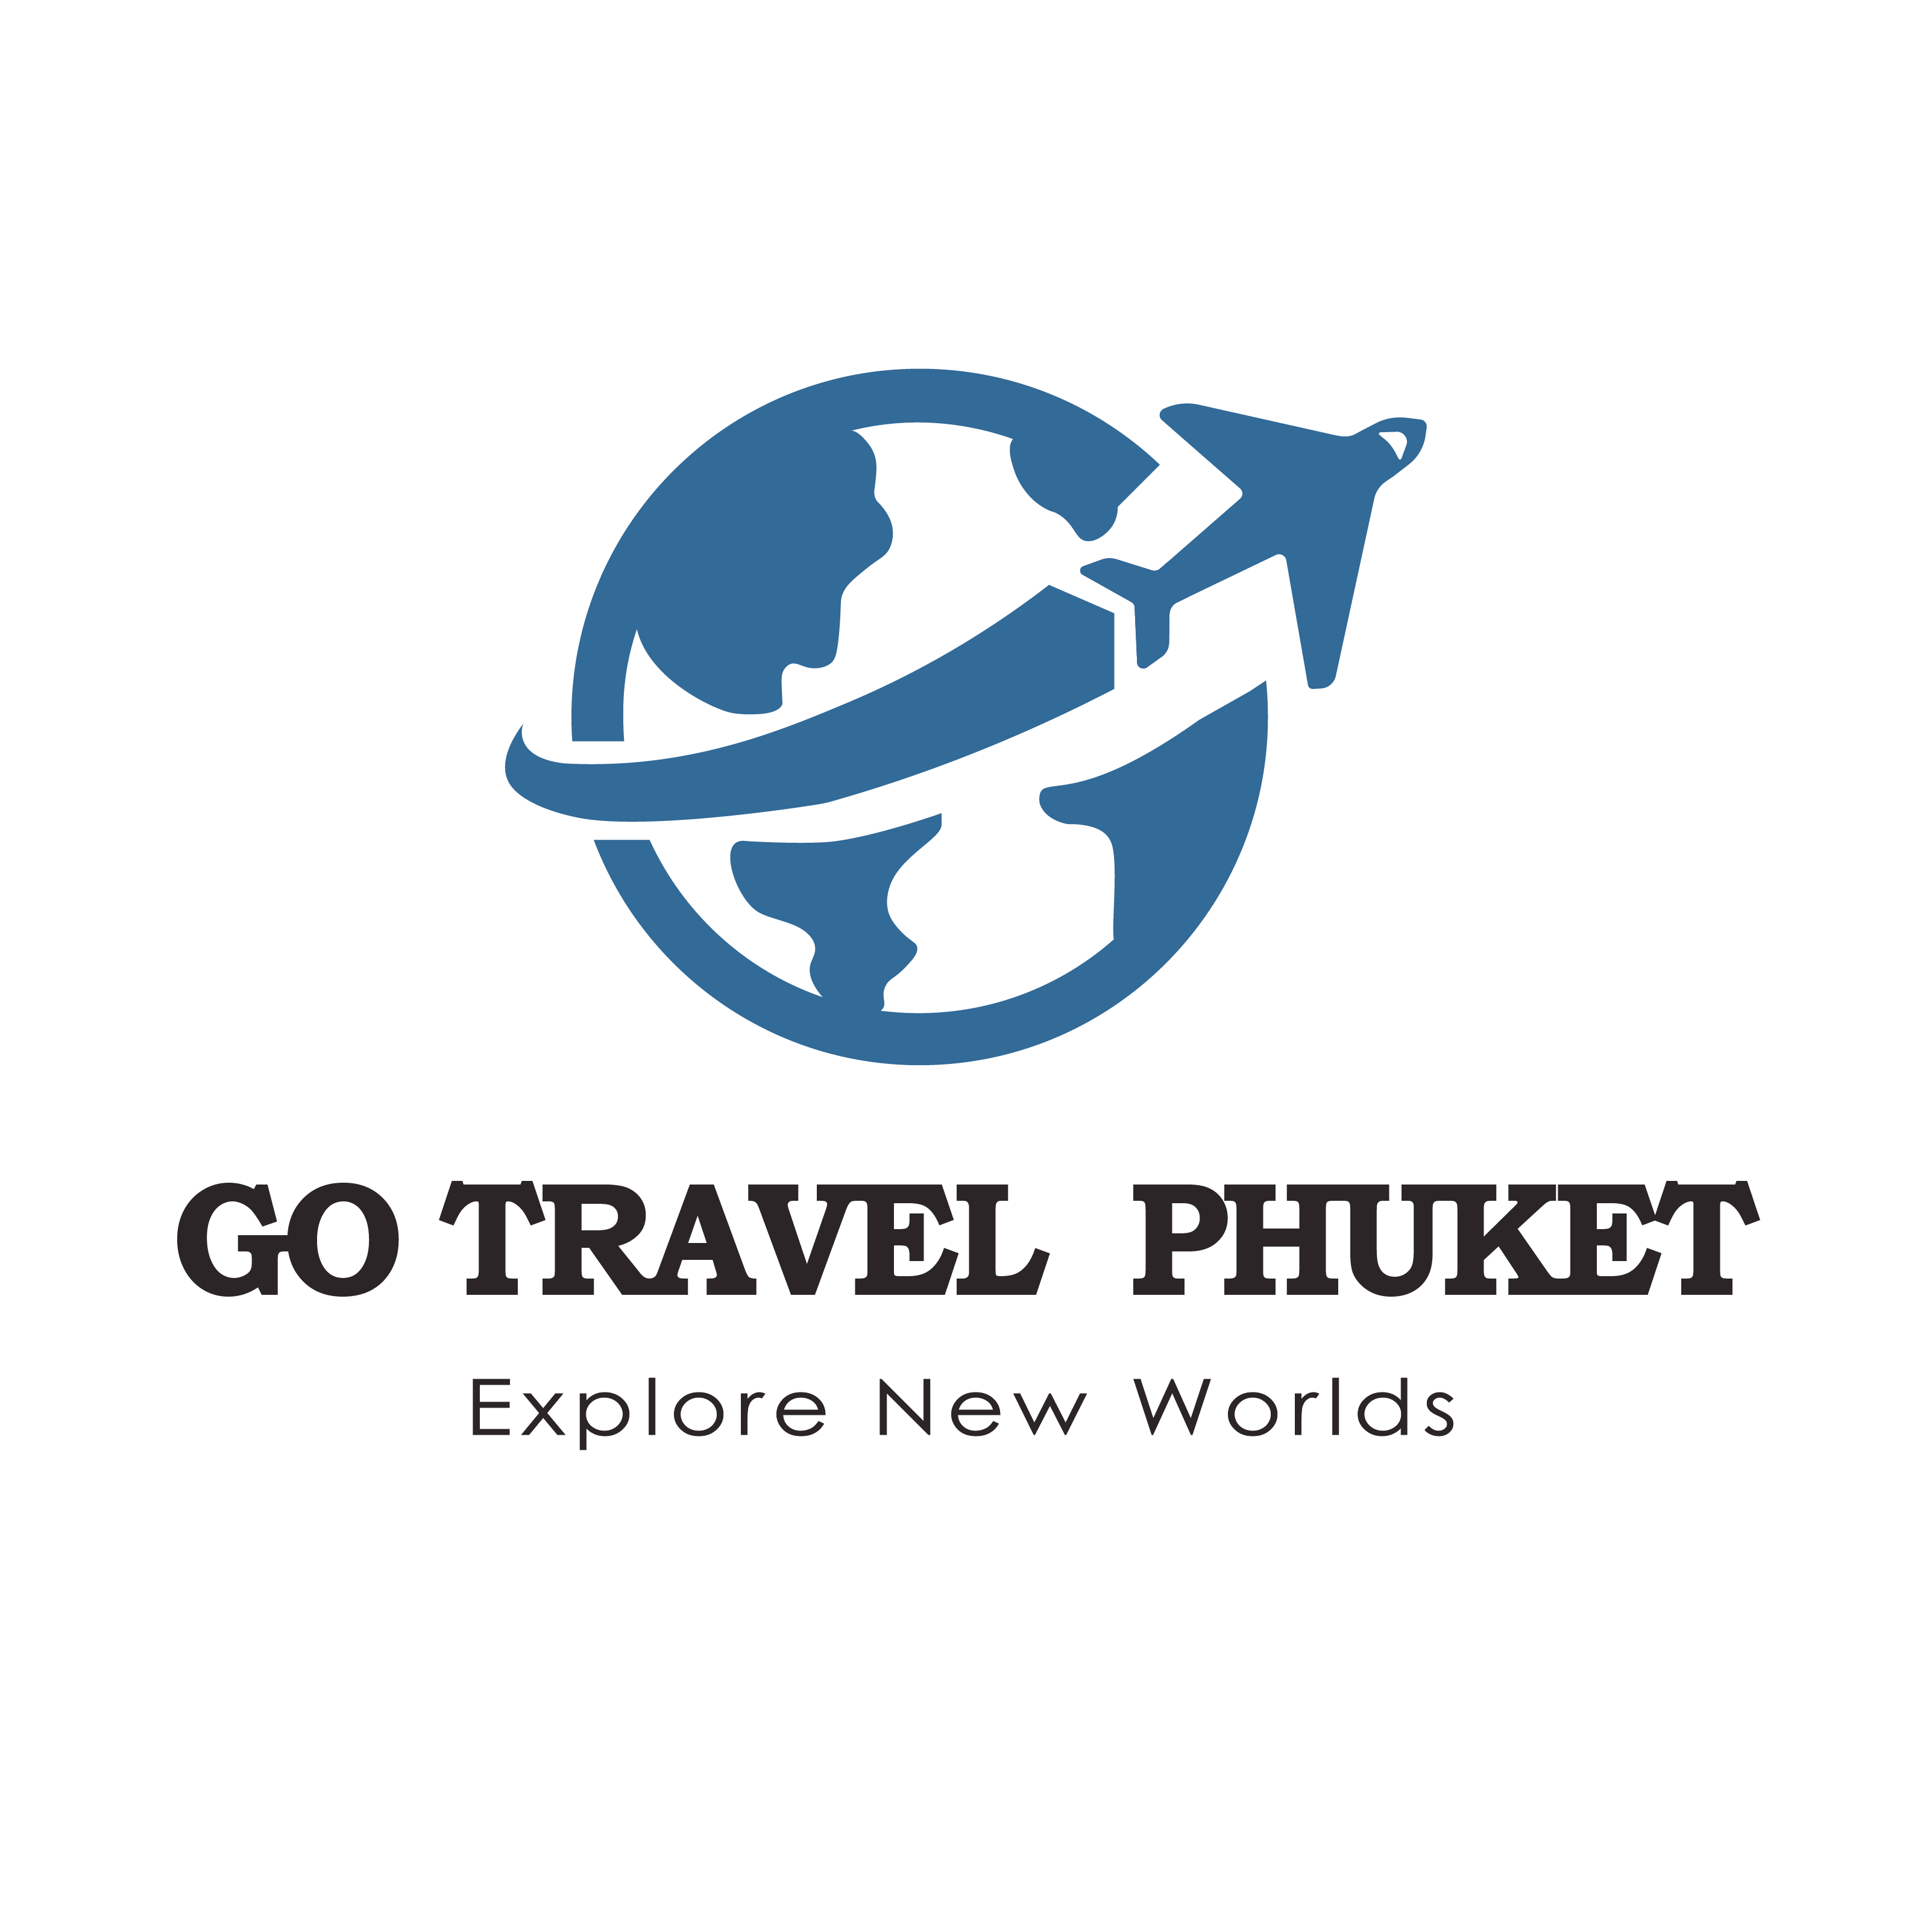 four island tour from phuket